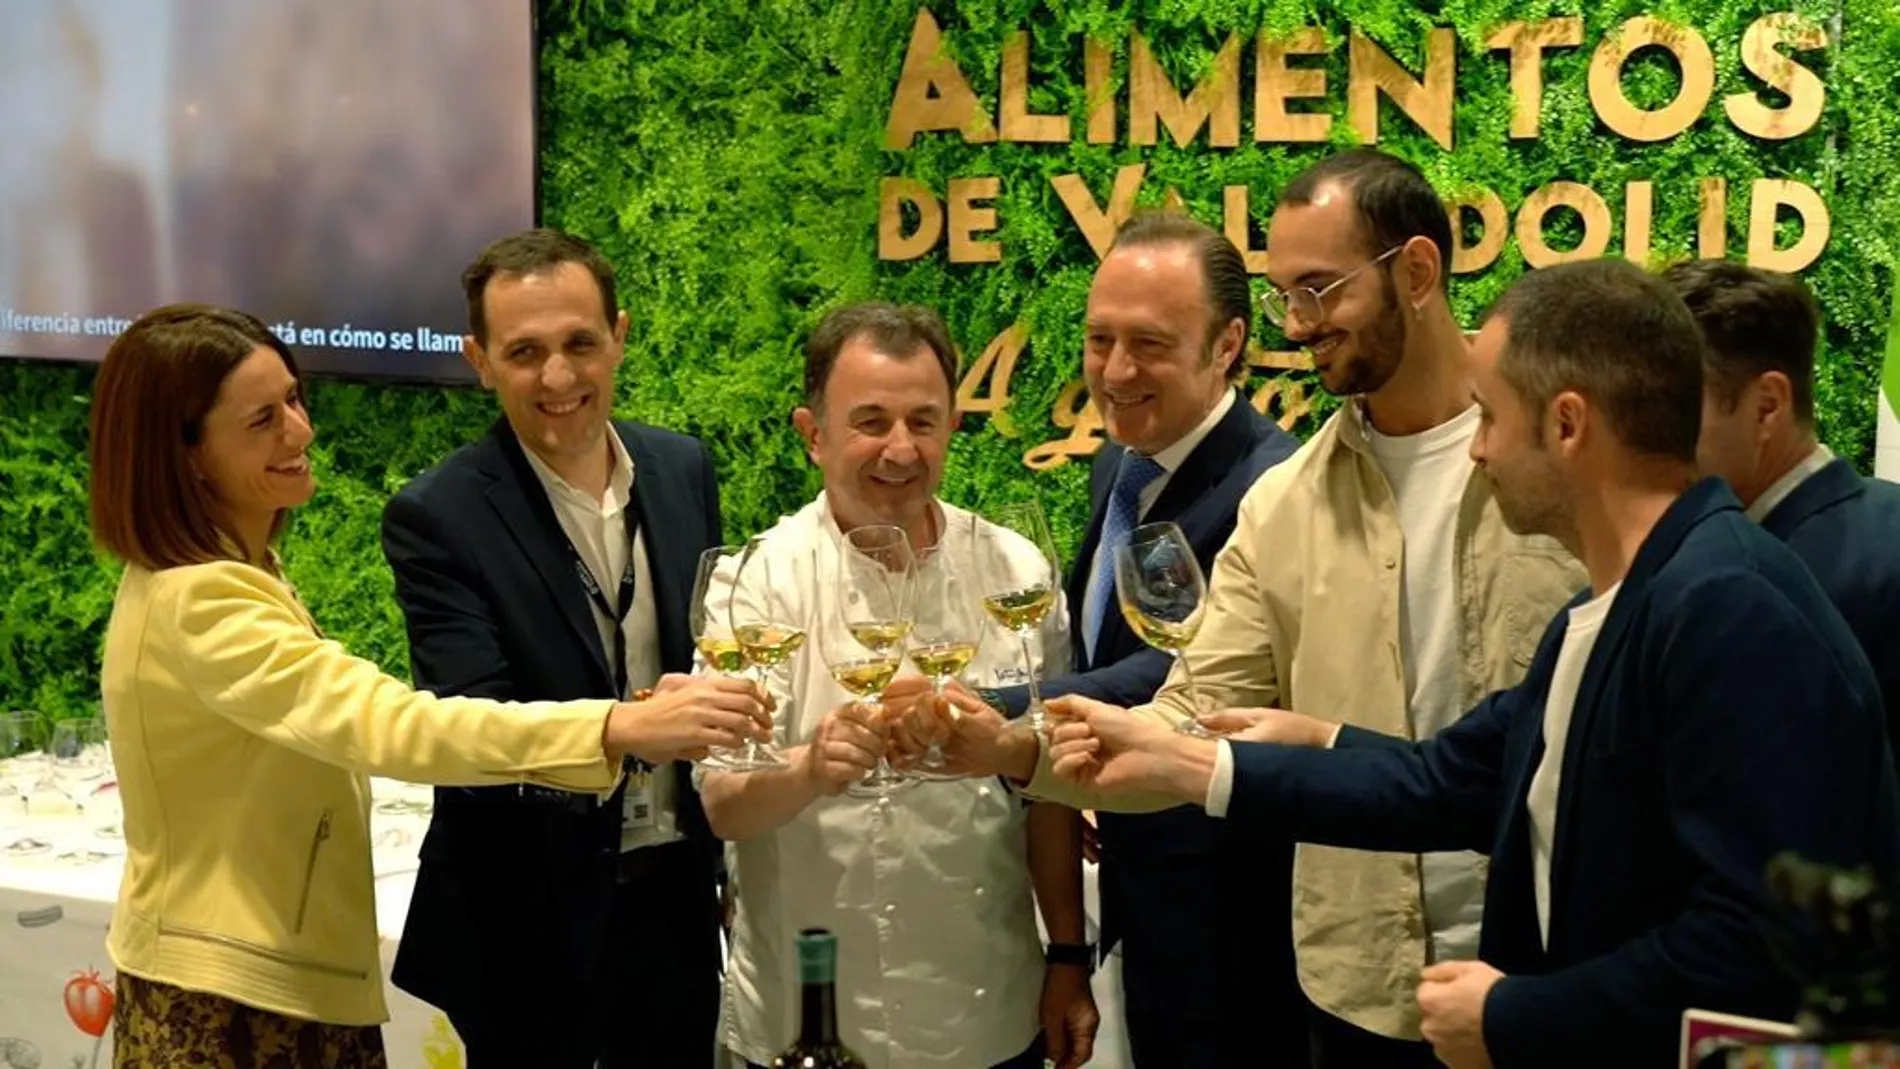 Conrado Íscar en el stand de Alimentos de Valaldolid, junto a Martín Berasategui, entre otros